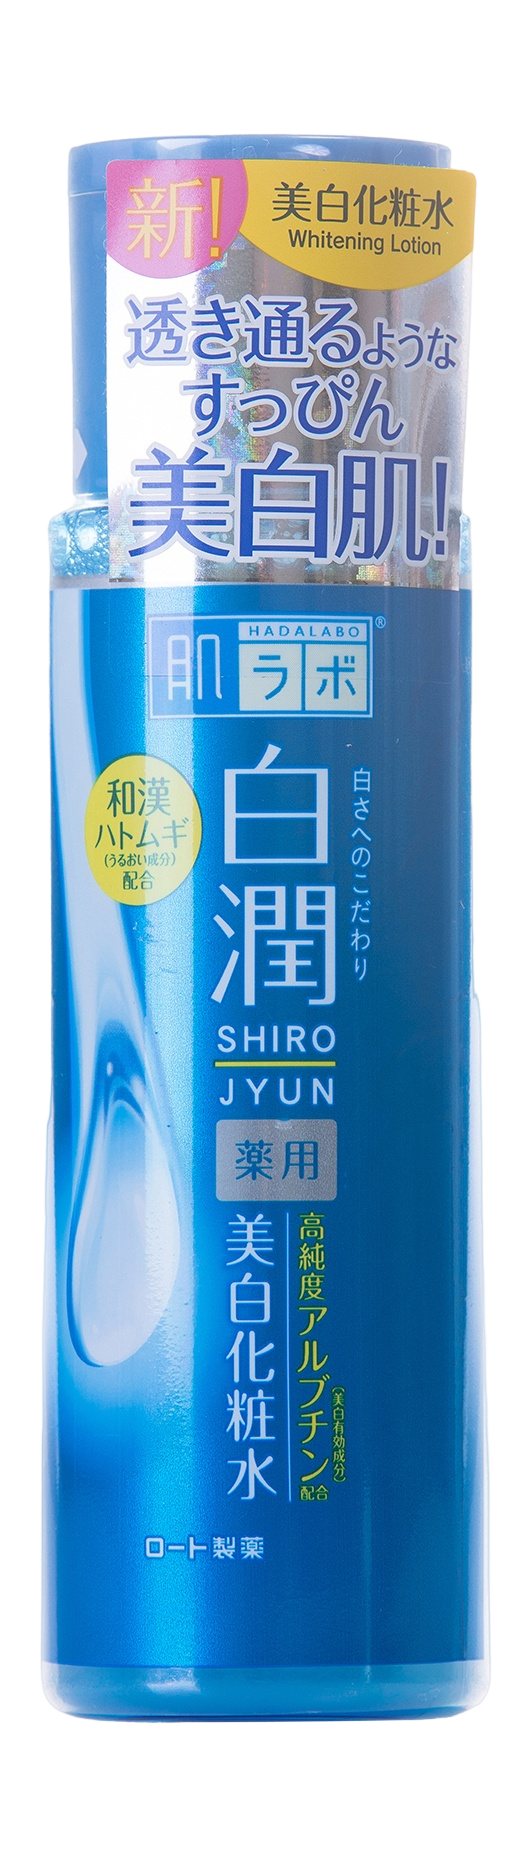 Лосьон для лица, осветляющий пигментацию Shirojyun Whitening Lotion купить в VISAGEHALL